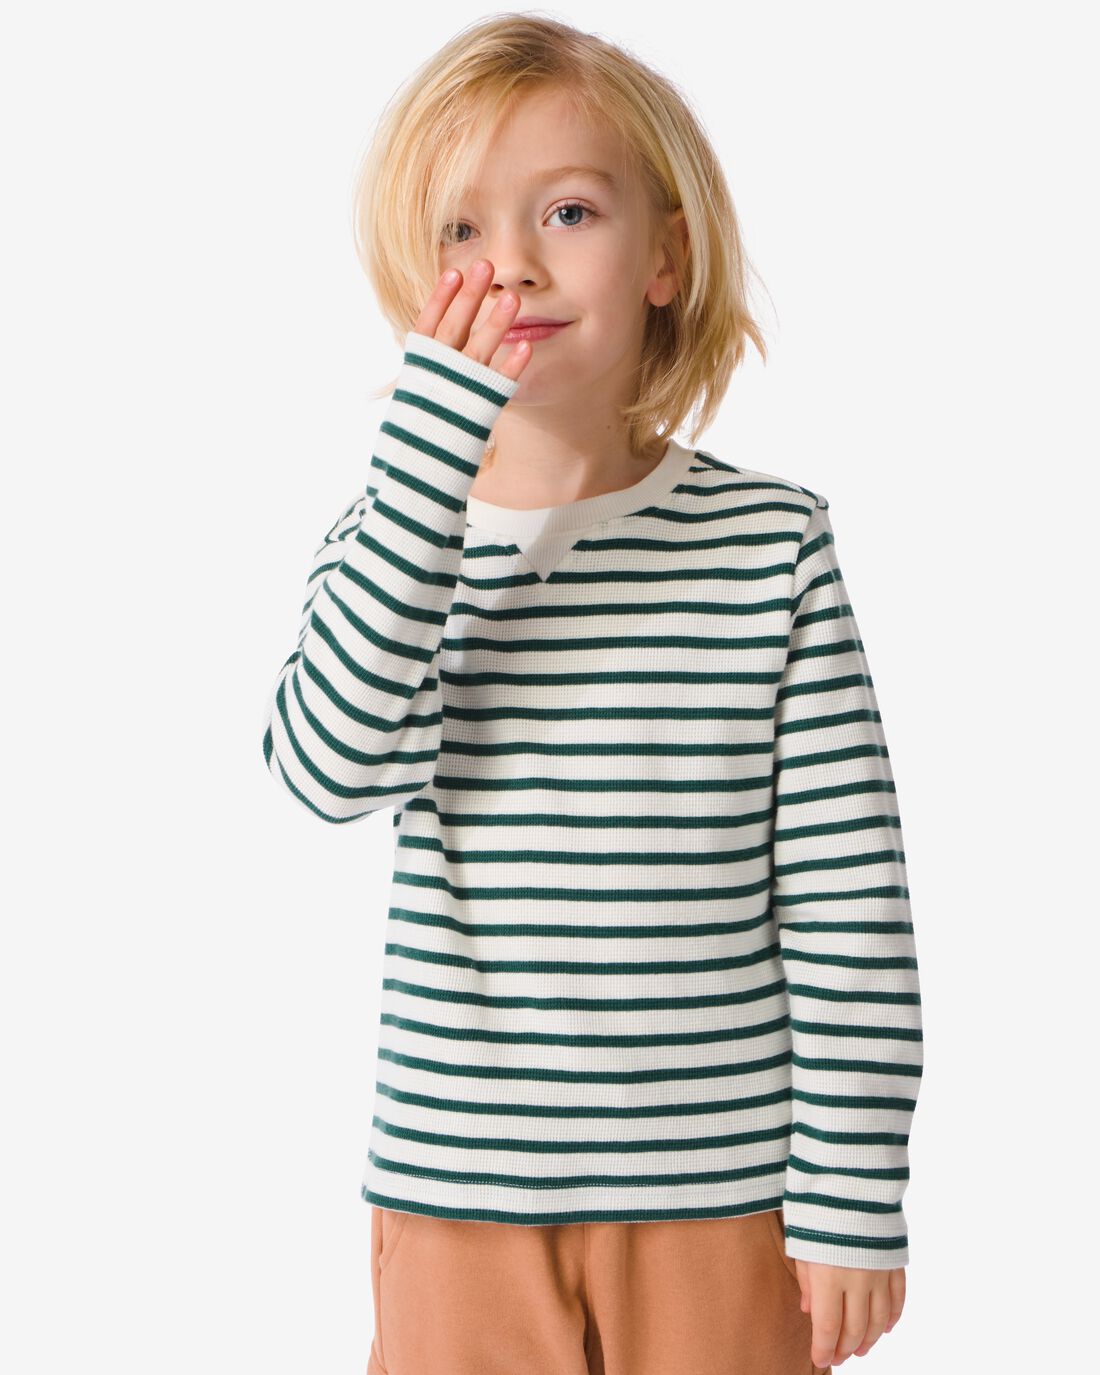 HEMA Kinder Shirt Met Strepen Groen (groen)